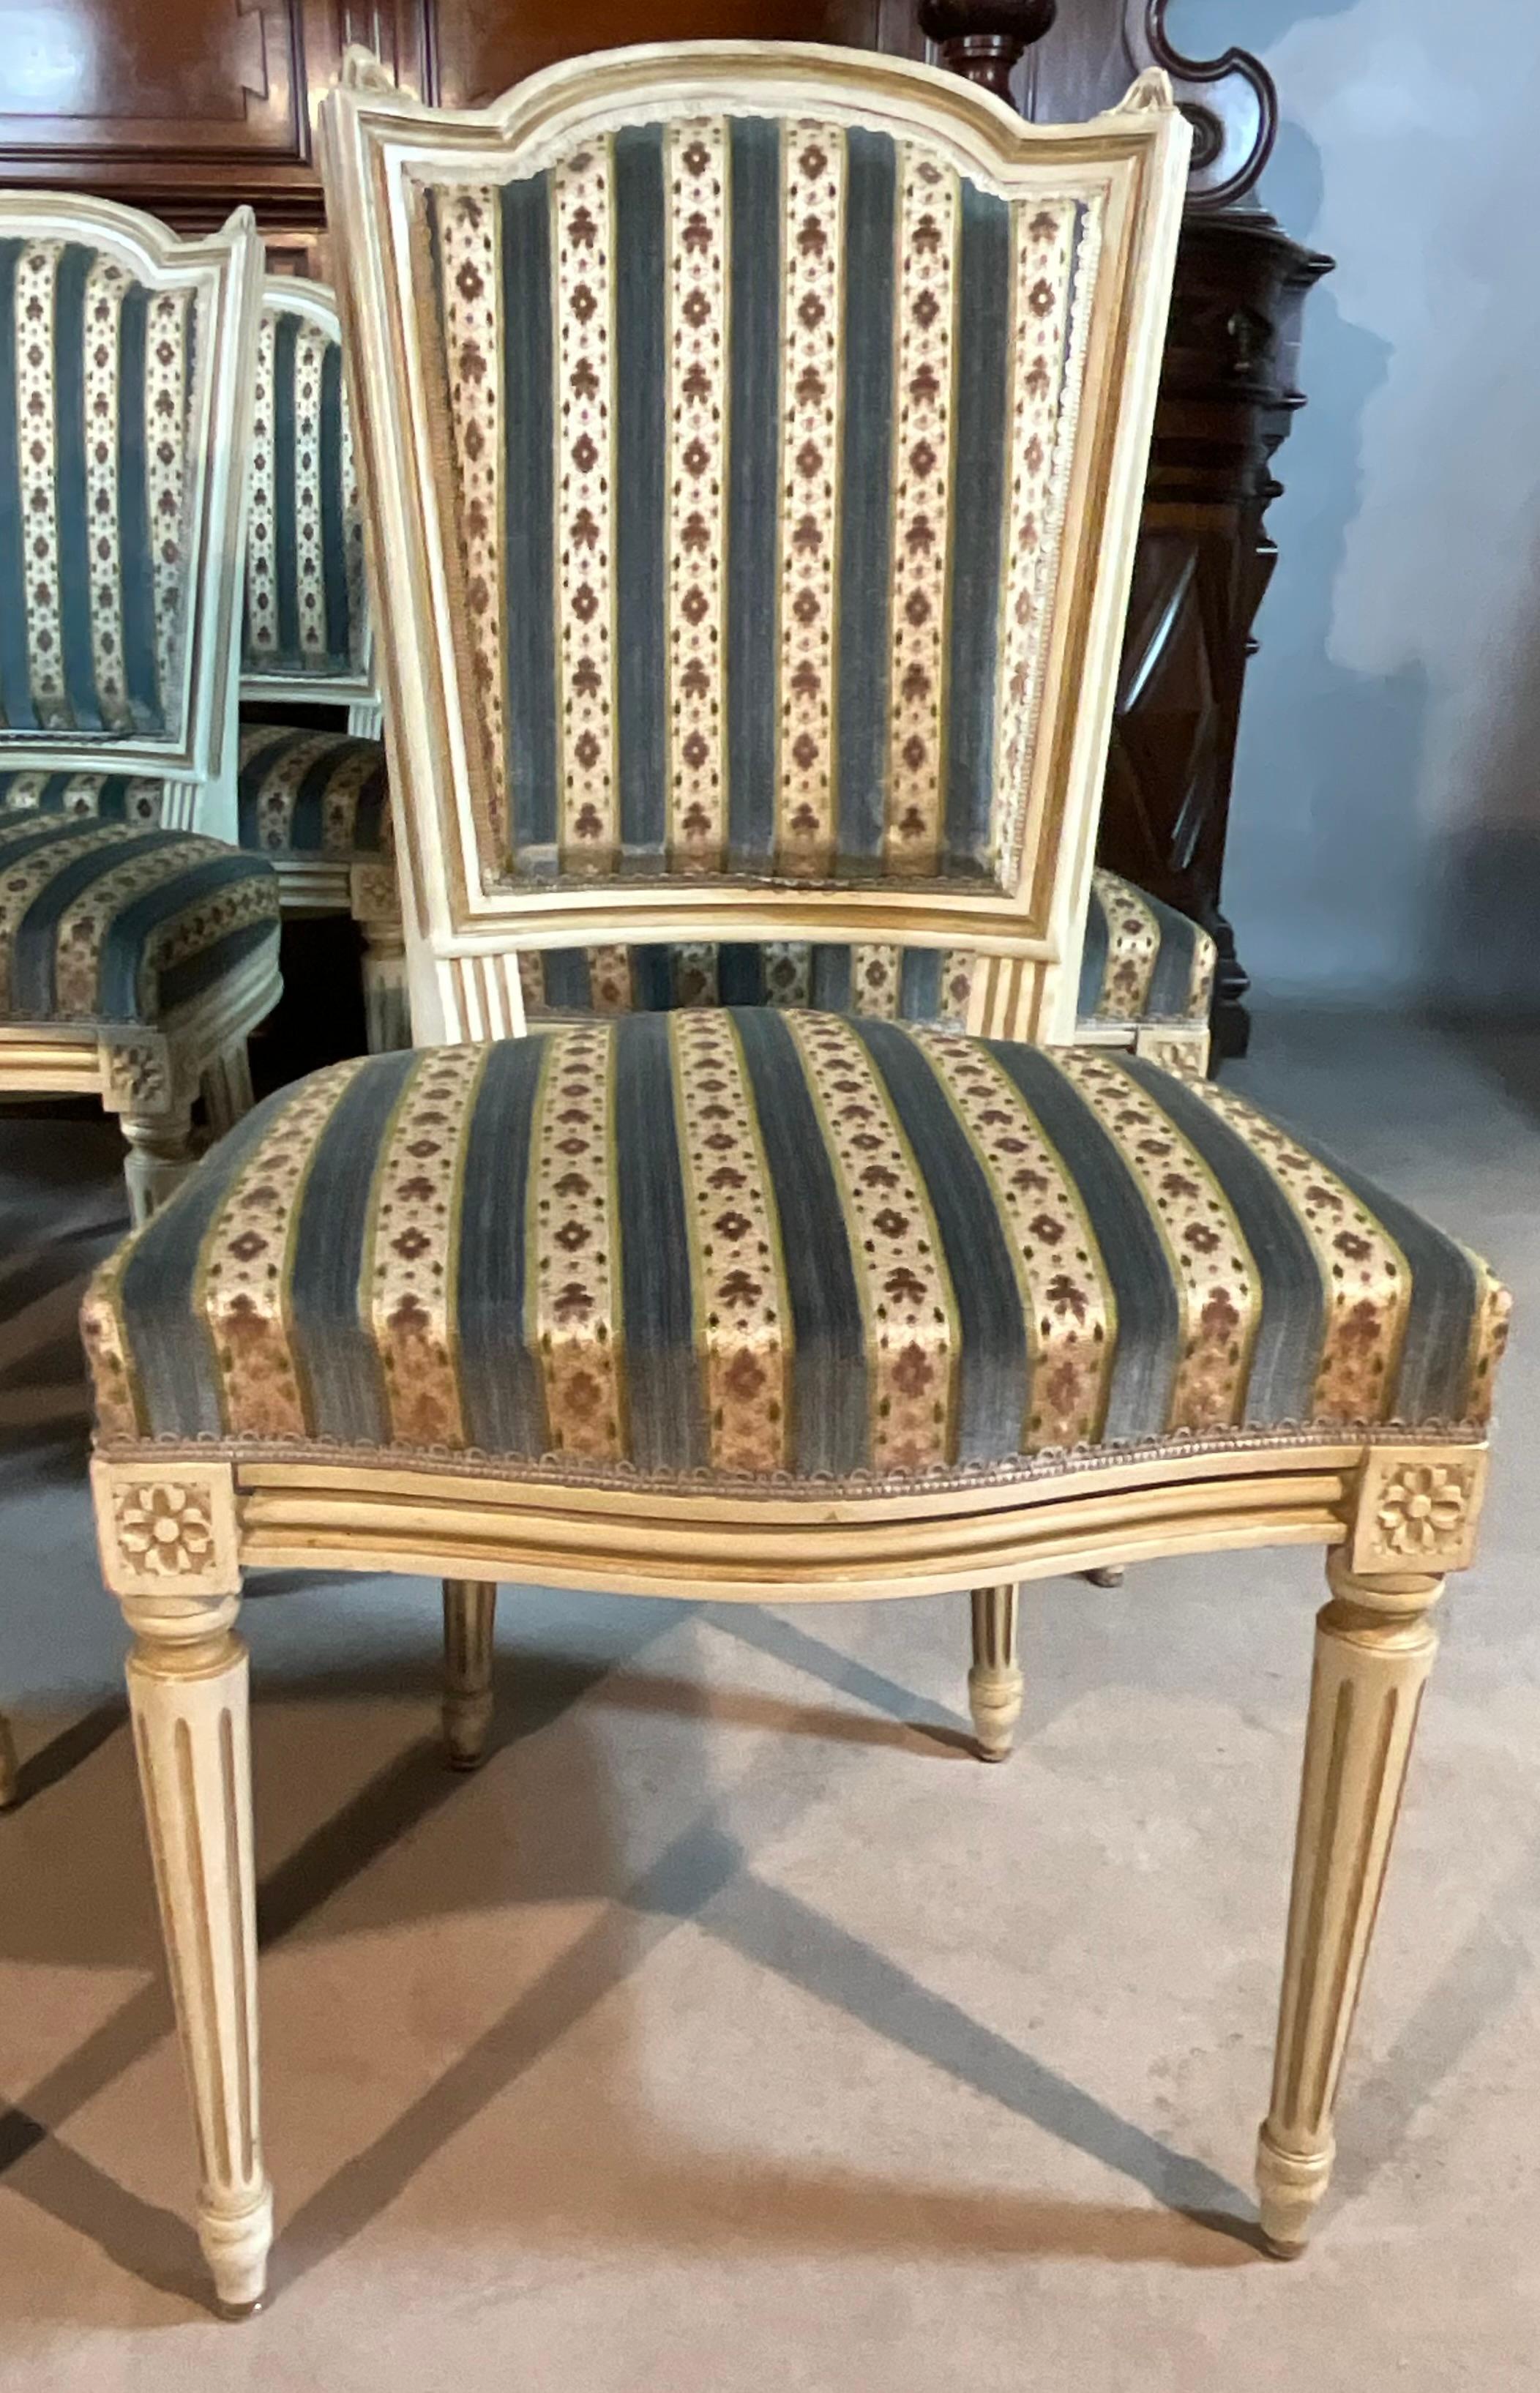 Satz von 6 Stühlen und einem Louis XVI-Sessel Ende des 19. Jahrhunderts.

Der Sitz ist mit Stoff gepolstert. Die Sitzlehnen sind starr, rechteckig und gerade. Der Sitz selbst ist rechteckig.

Alle Holzarbeiten sind in sehr gutem Zustand und